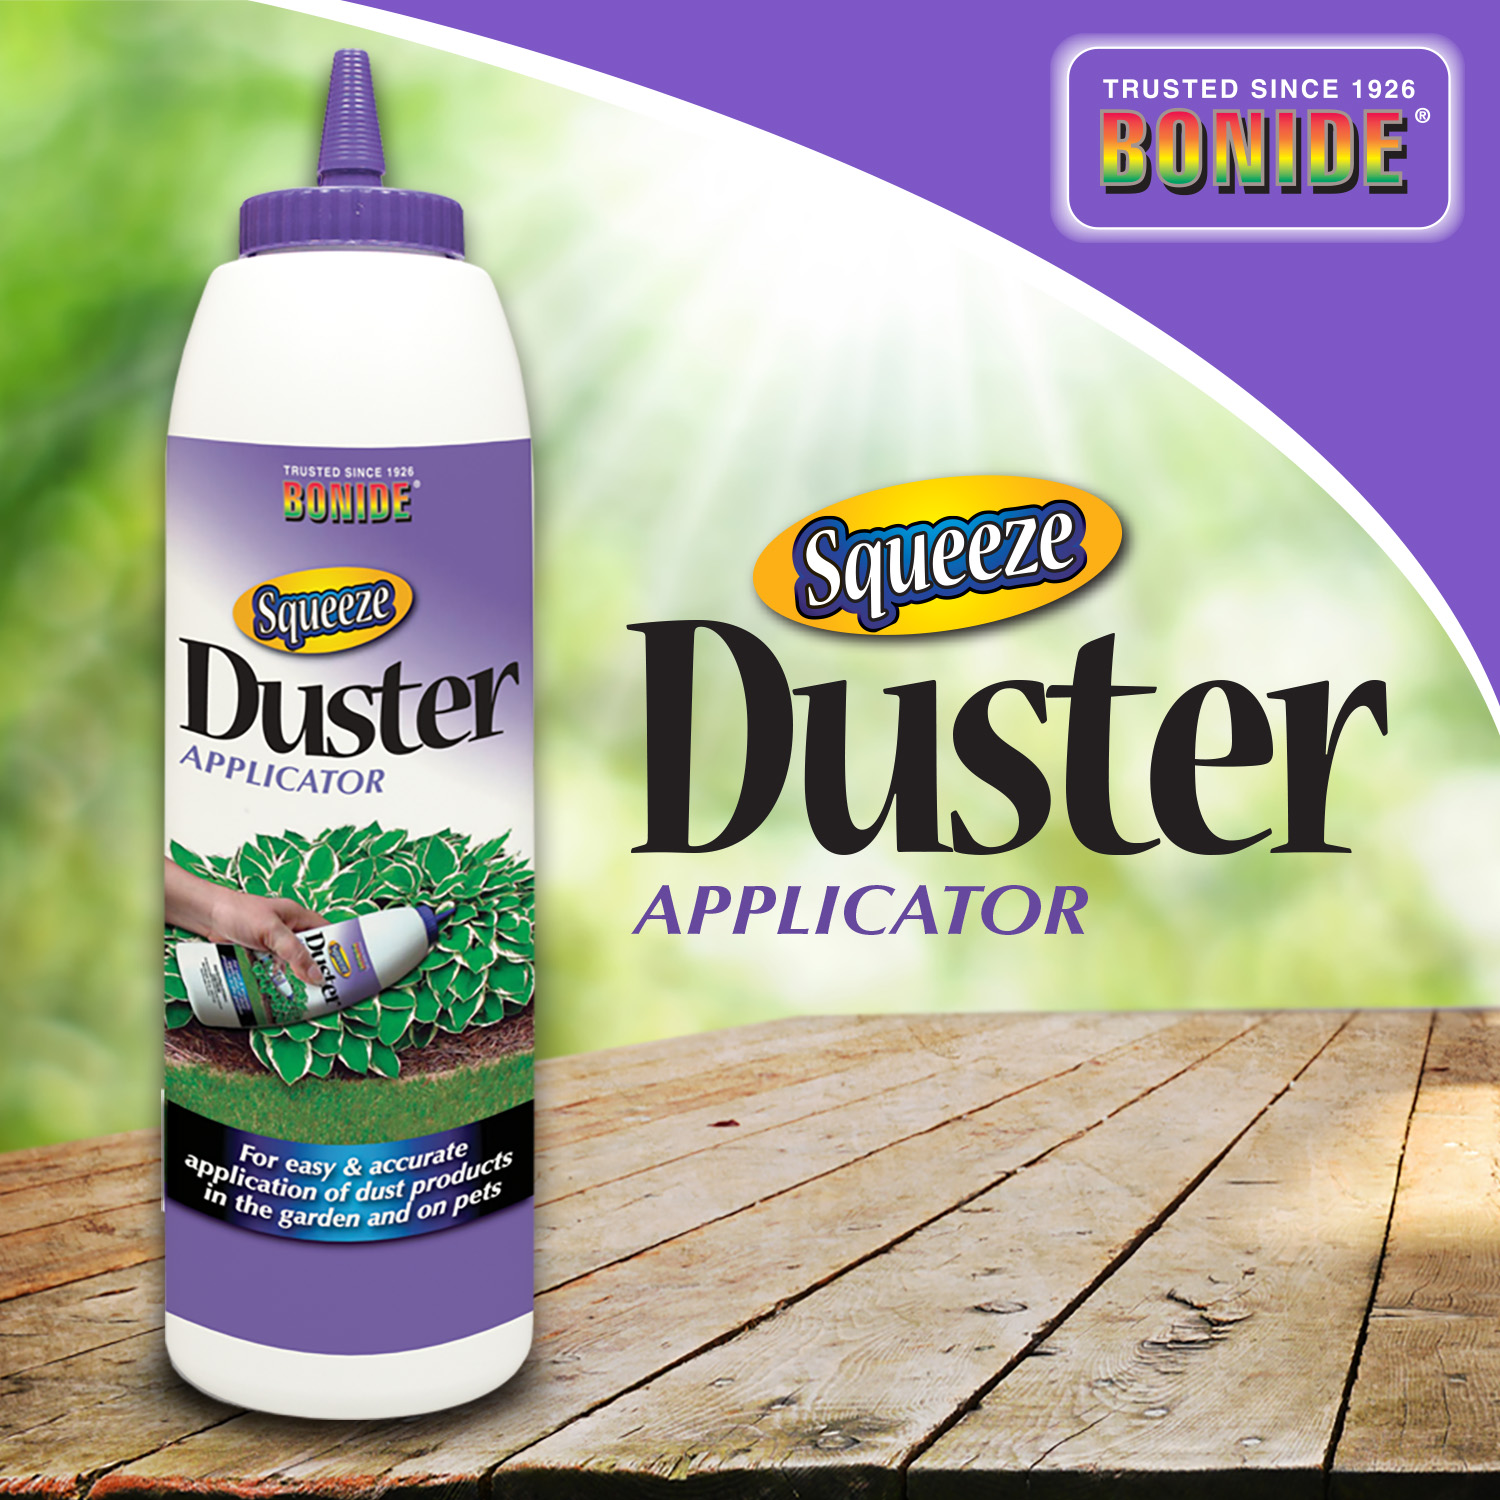 Duster Applicator